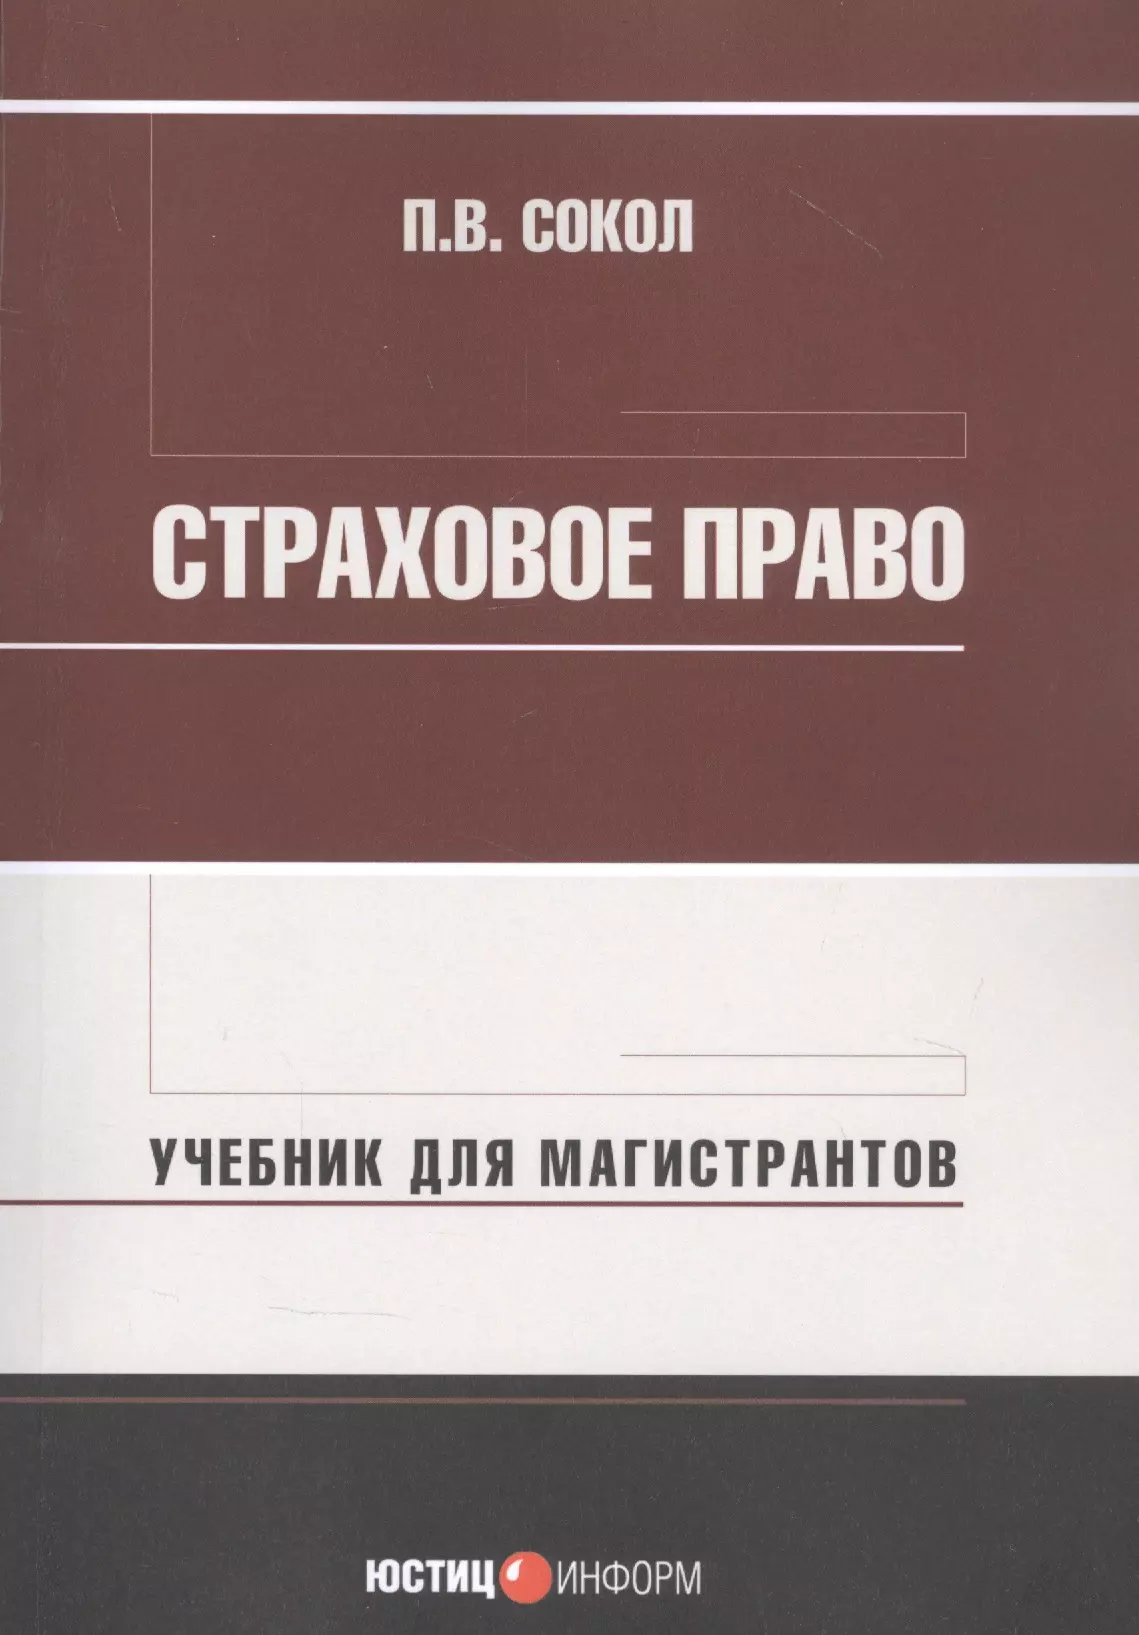 Сокол Павел Викторович - Страховое право: Учебник для магистрантов